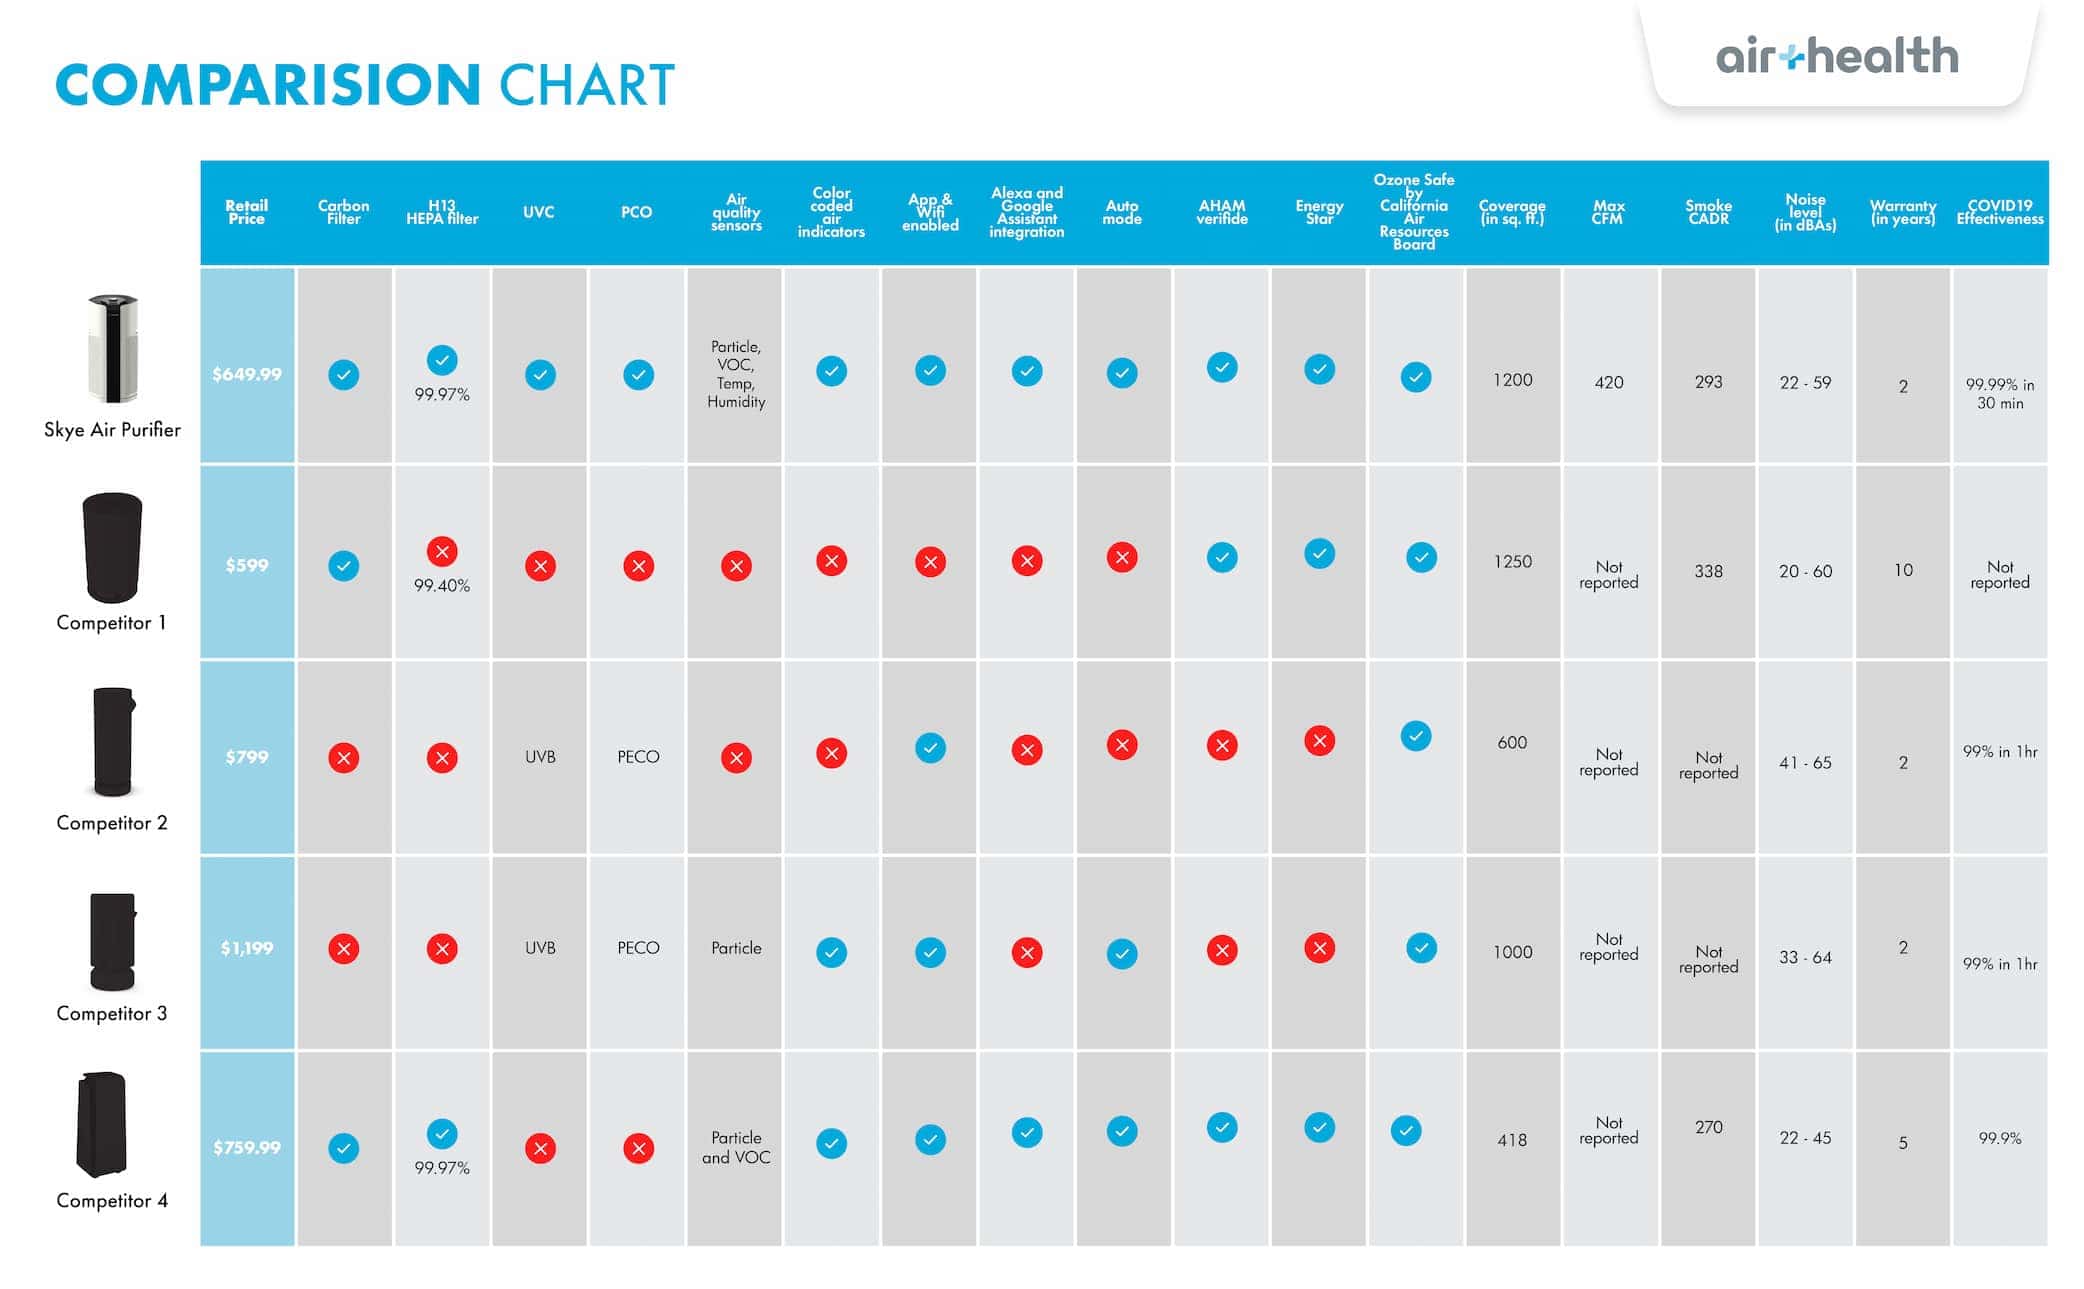 Skye Air Purifier Comparison Chart